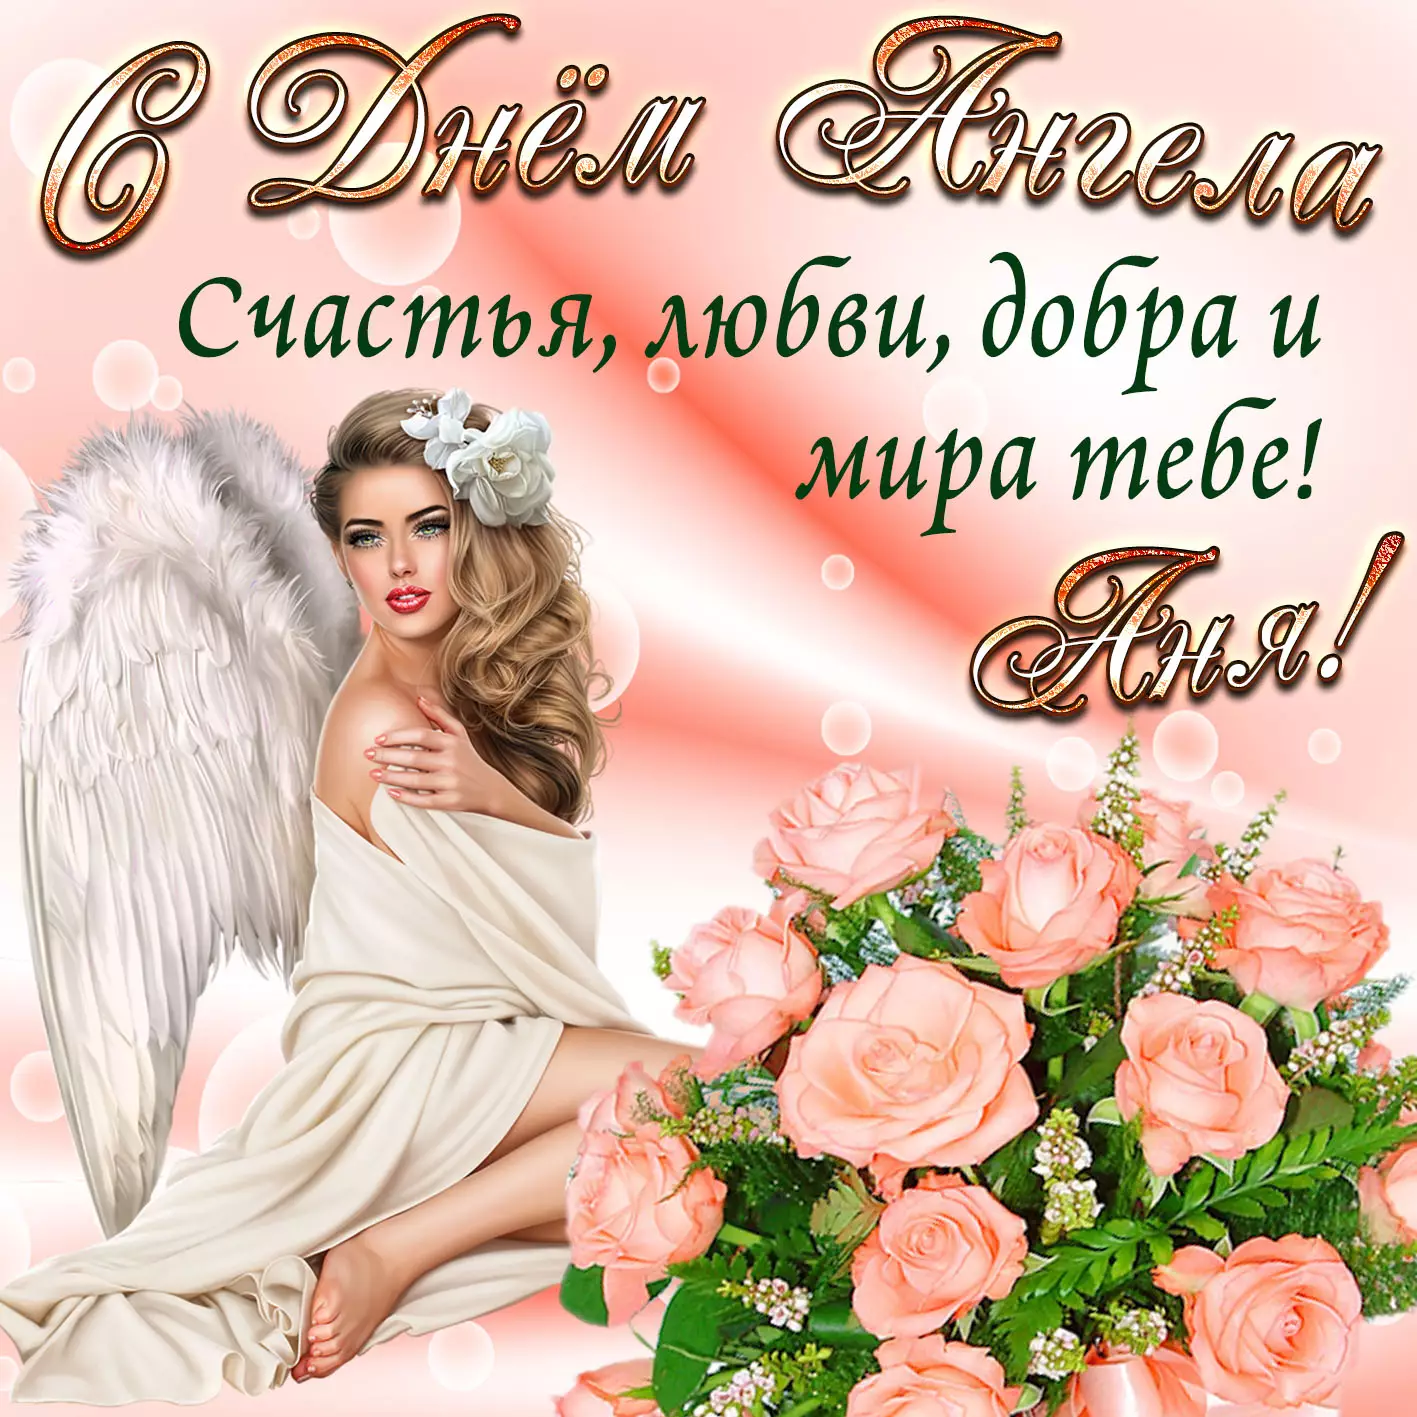 День ангела Анны: значение имени и СМС поздравления